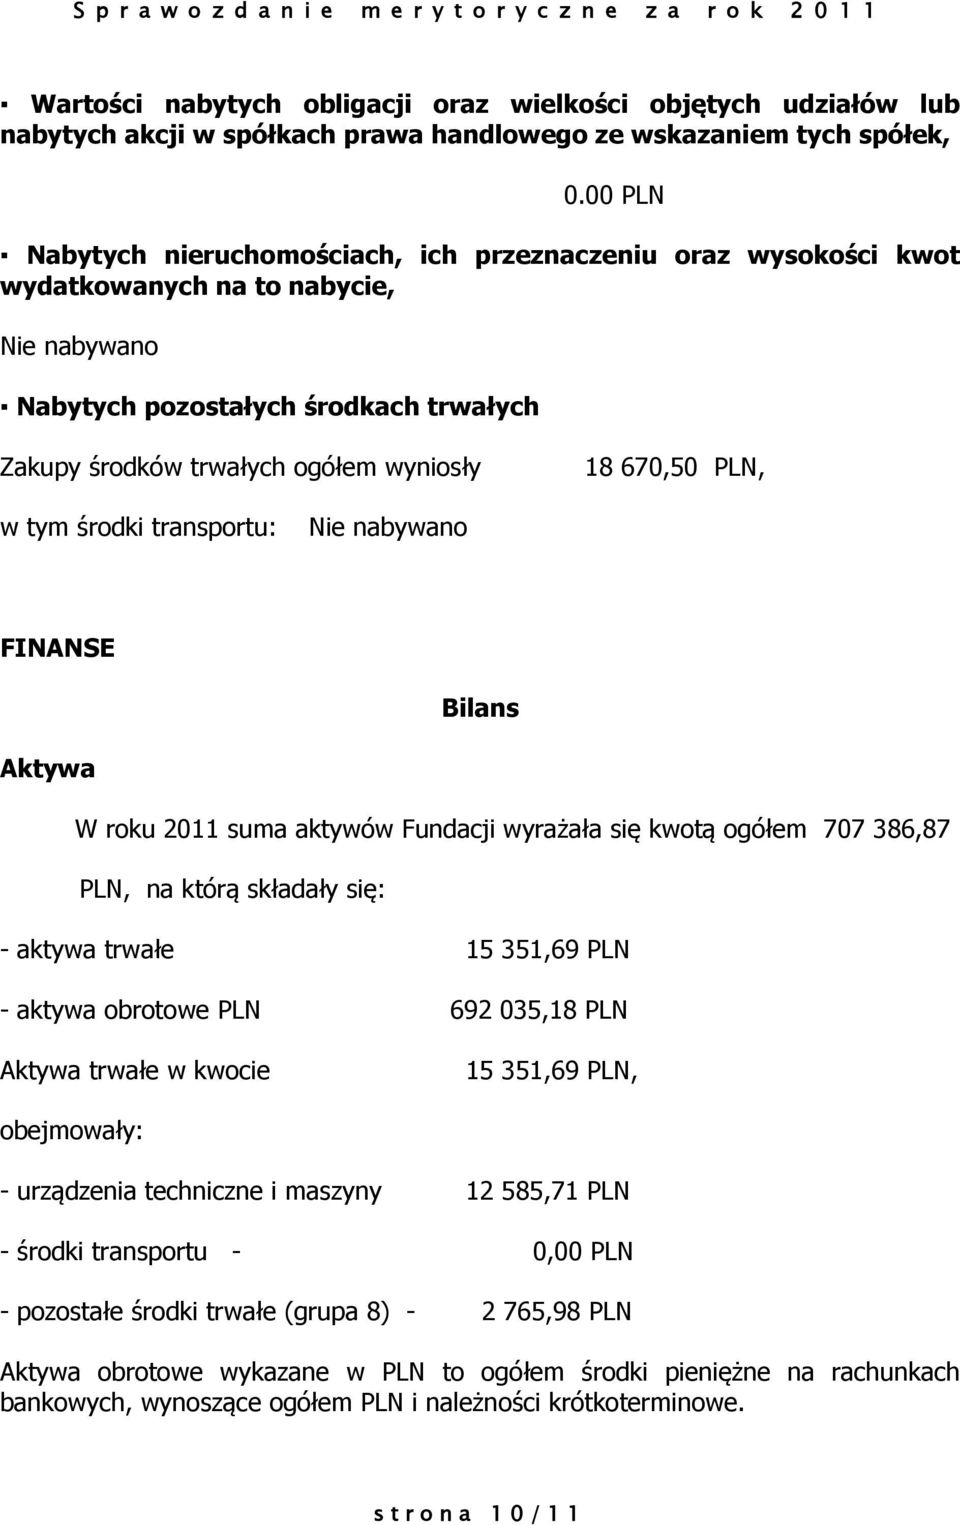 670,50 PLN, w tym środki transportu: Nie nabywano FINANSE Bilans Aktywa W roku 2011 suma aktywów Fundacji wyrażała się kwotą ogółem 707 386,87 PLN, na którą składały się: - aktywa trwałe 15 351,69